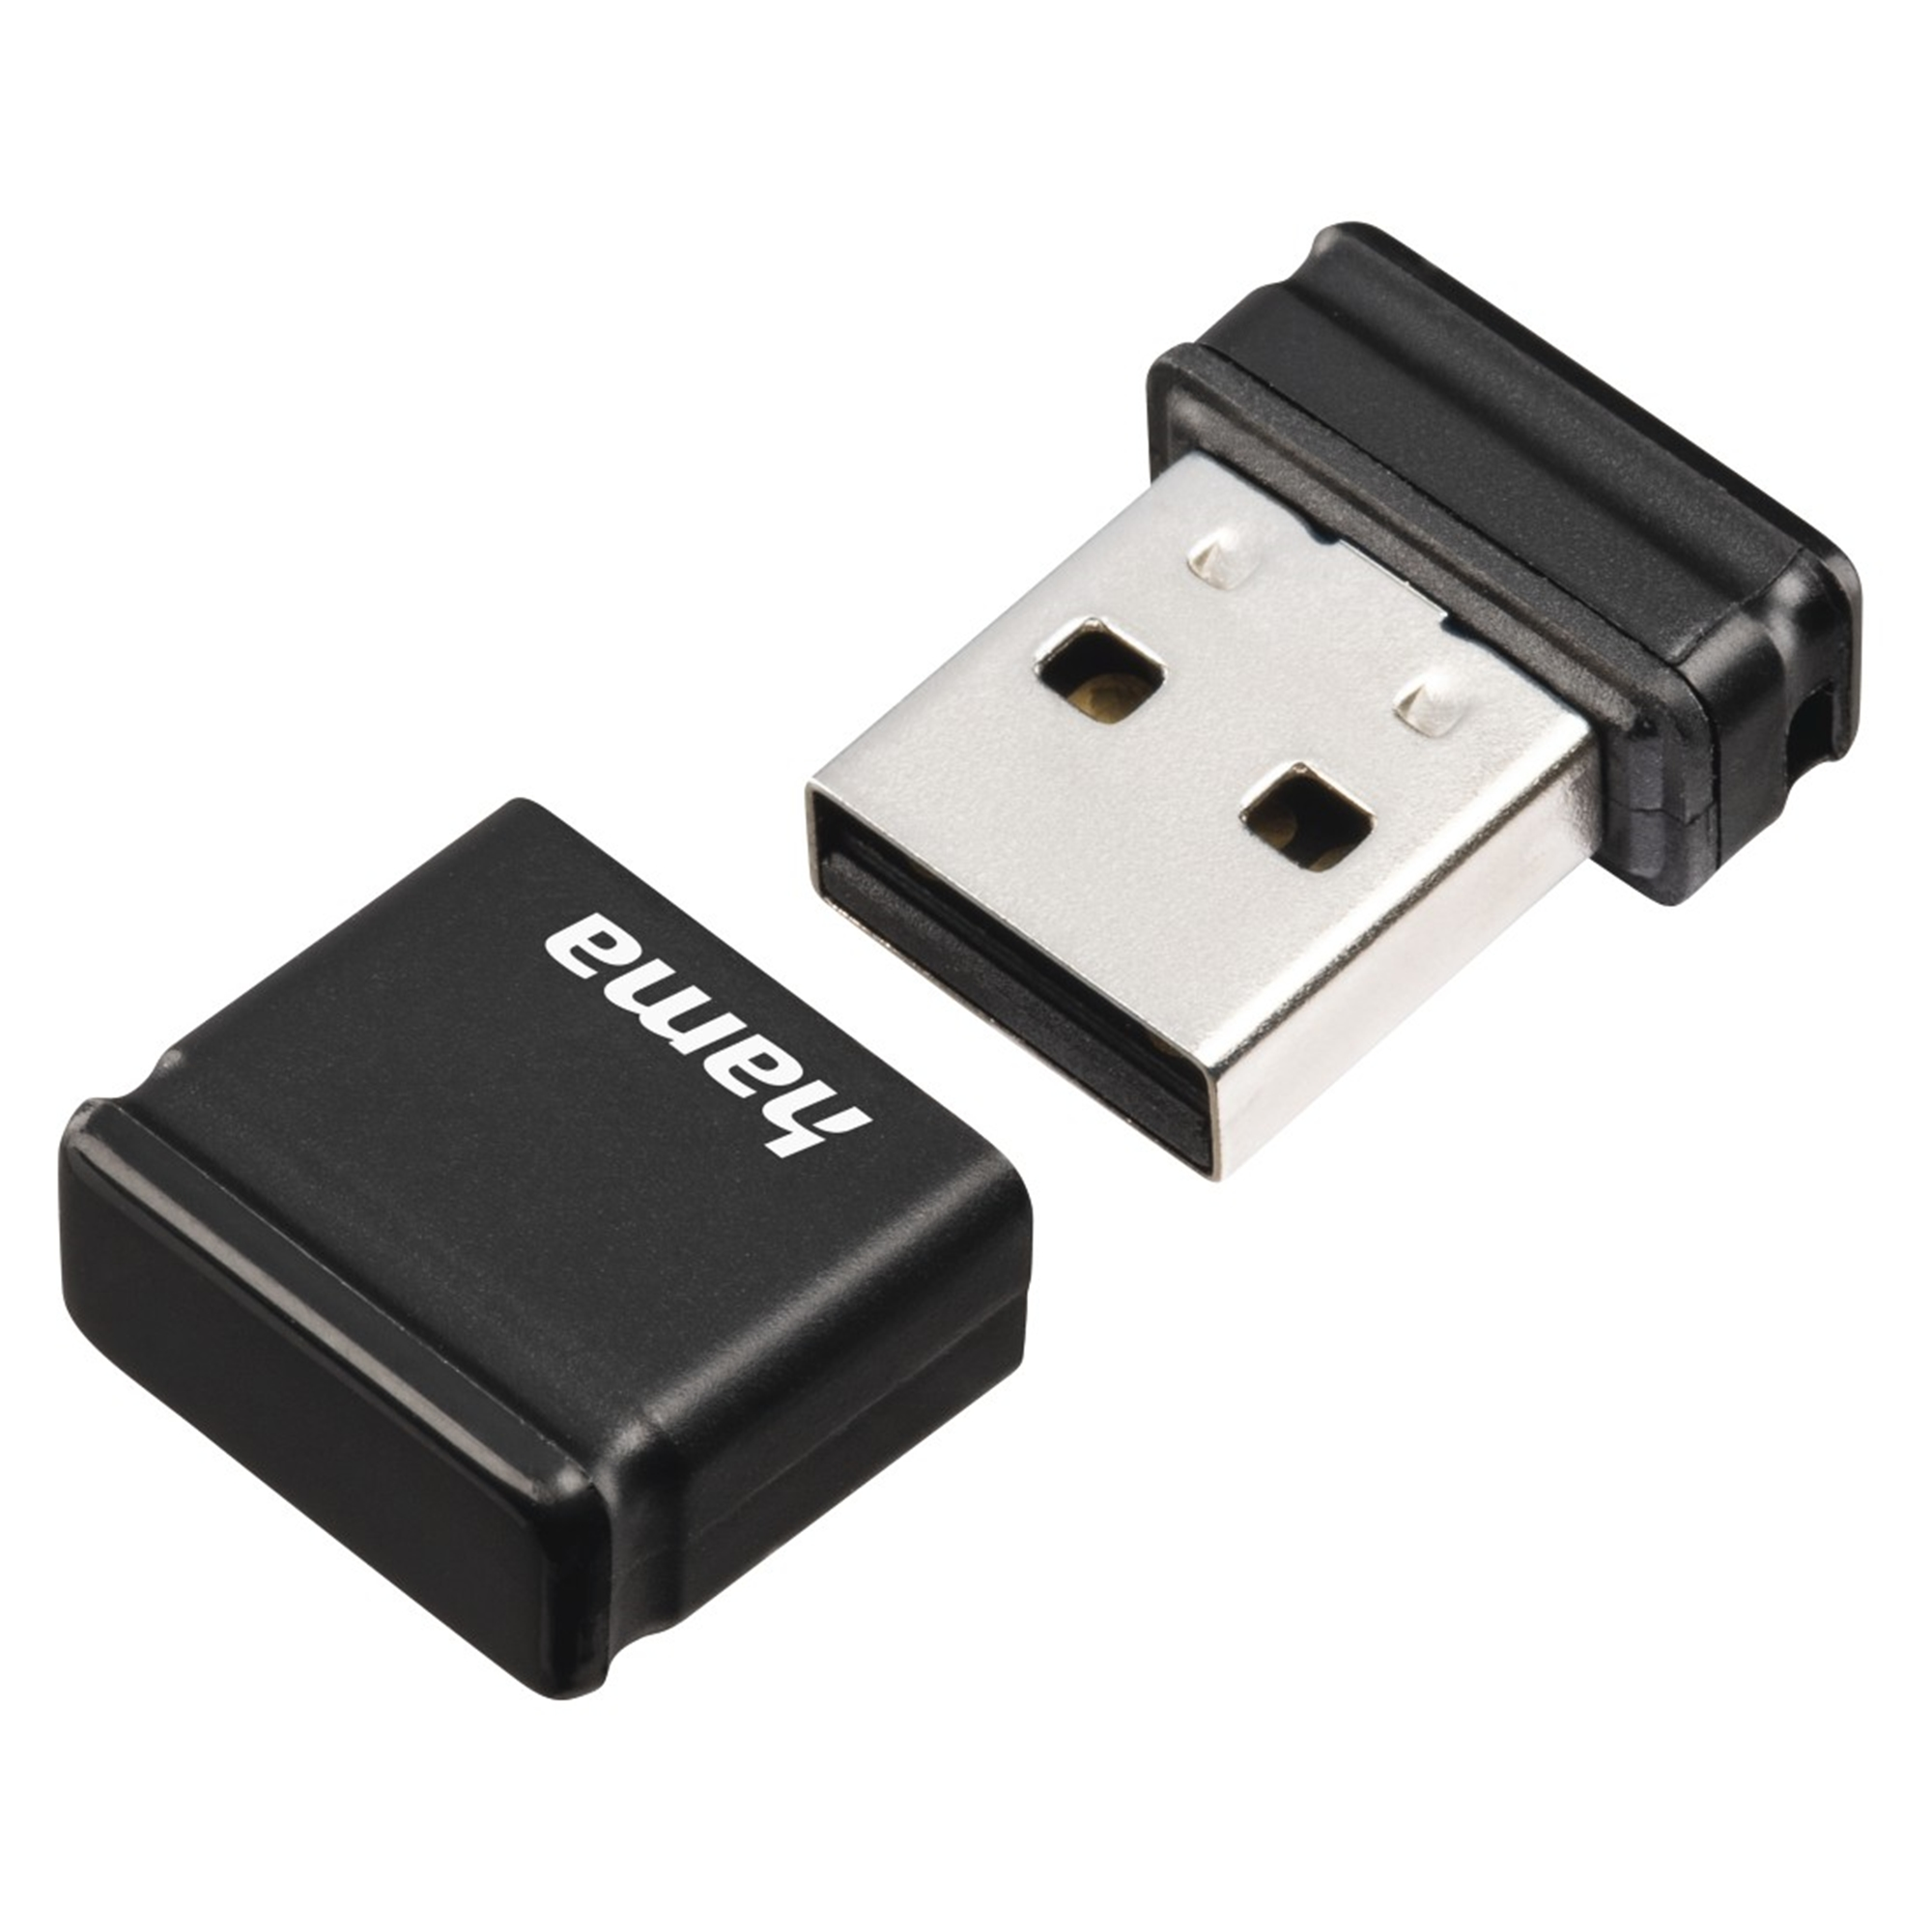 (Schwarz, 32 GB Smartly USB-Stick HAMA 32 GB)